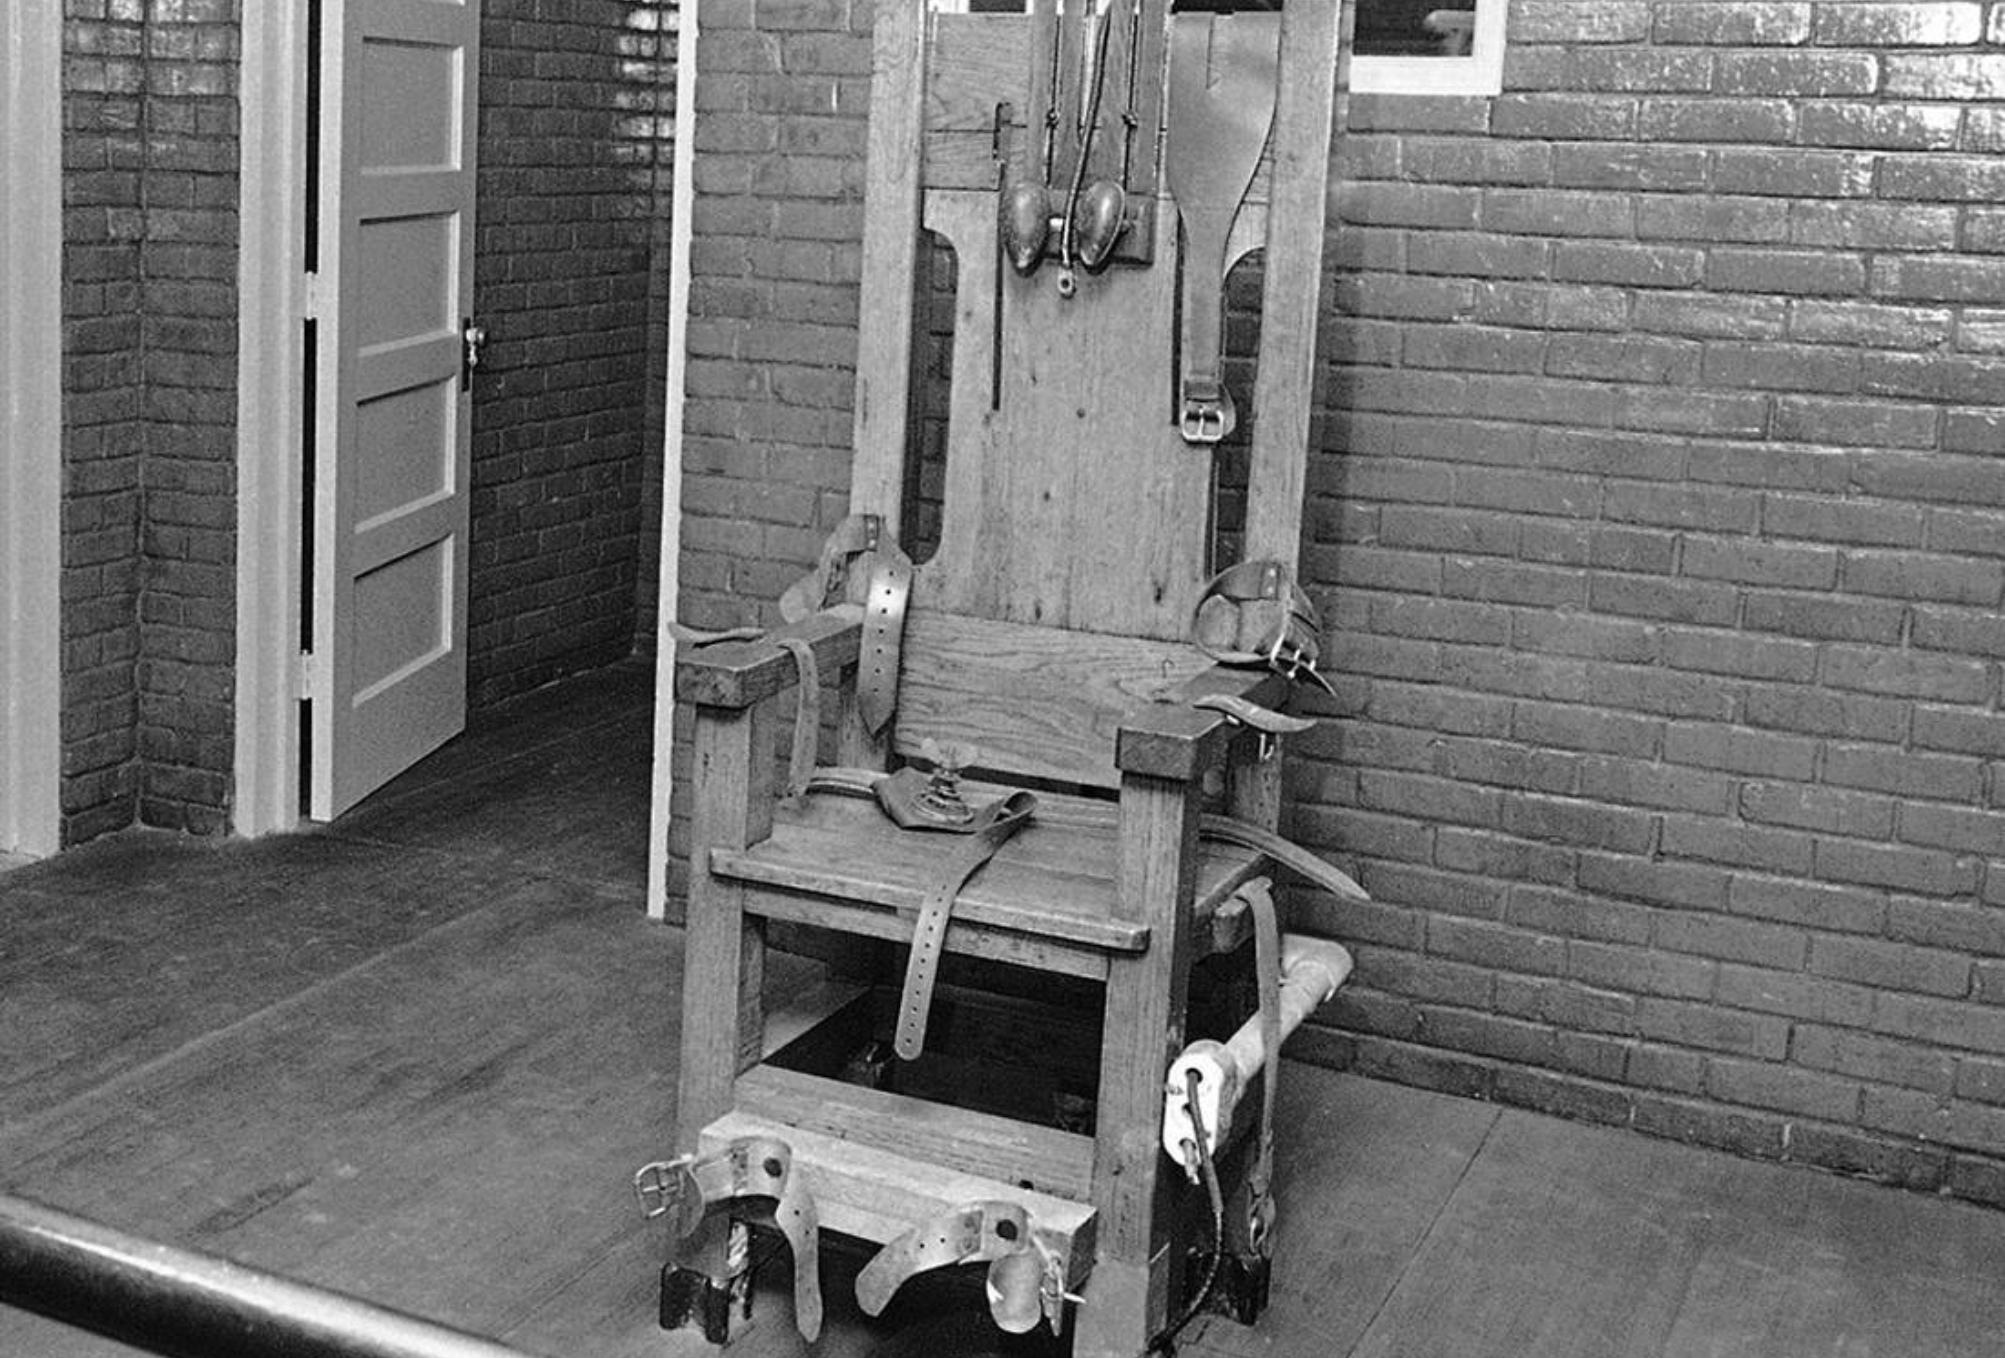 Η αληθινή ιστορία πίσω από το “Πράσινο Μίλι”: George Stinney το μικρότερο θύμα ηλεκτρικής καρέκλας ένας 14χρονος που καταδικάστηκε σε θάνατο  χωρίς κανένα στοιχείο σε βάρος του